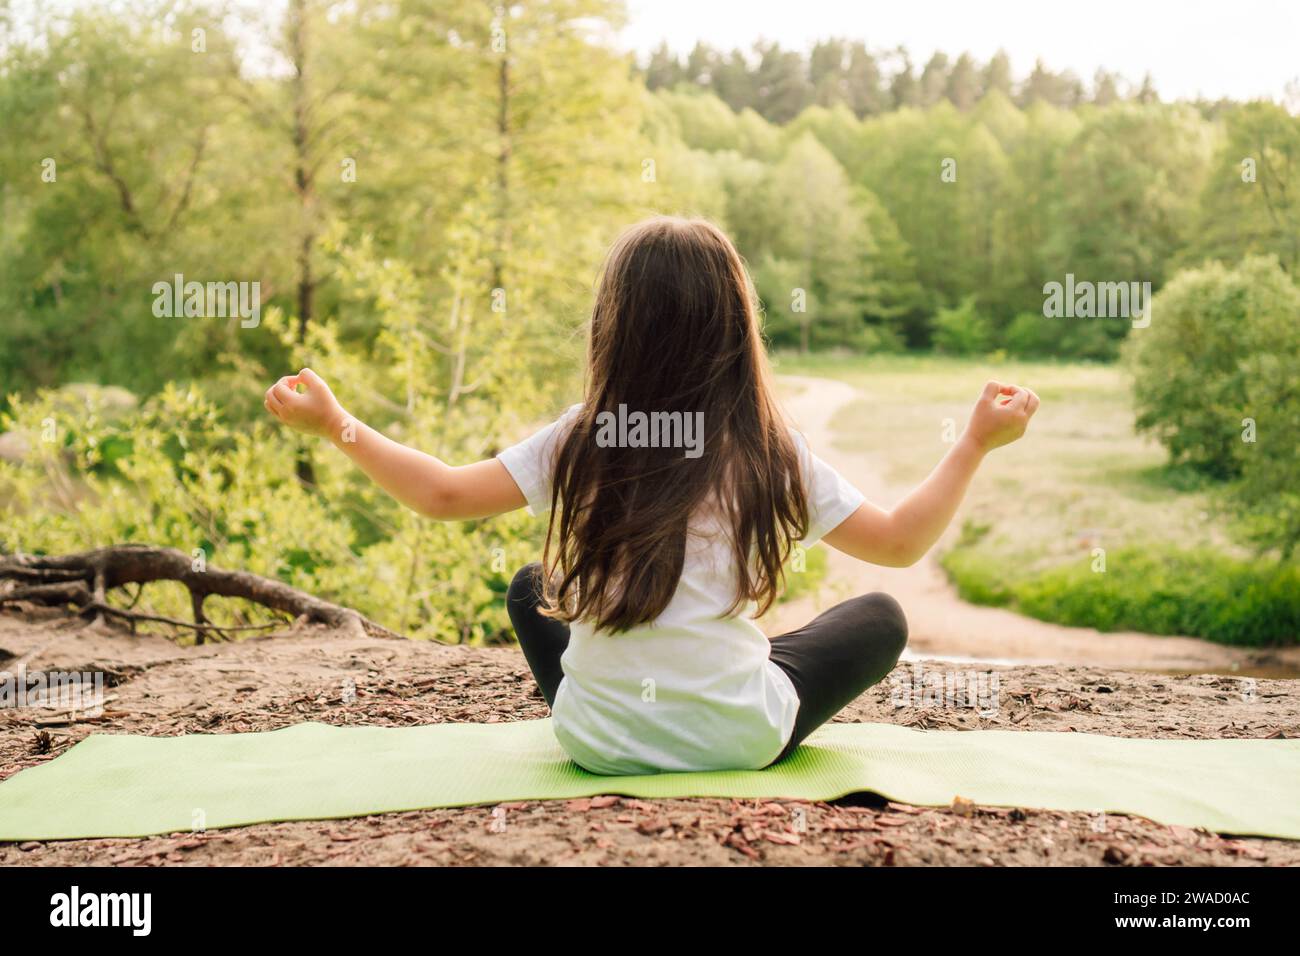 Rückansicht eines kleinen Mädchens mit braunen langen Haaren, das auf grünem, sportlichem Teppich sitzt und vor dem Fluss Yoga praktiziert. Aktive Sportlerin in weißem T-sh Stockfoto